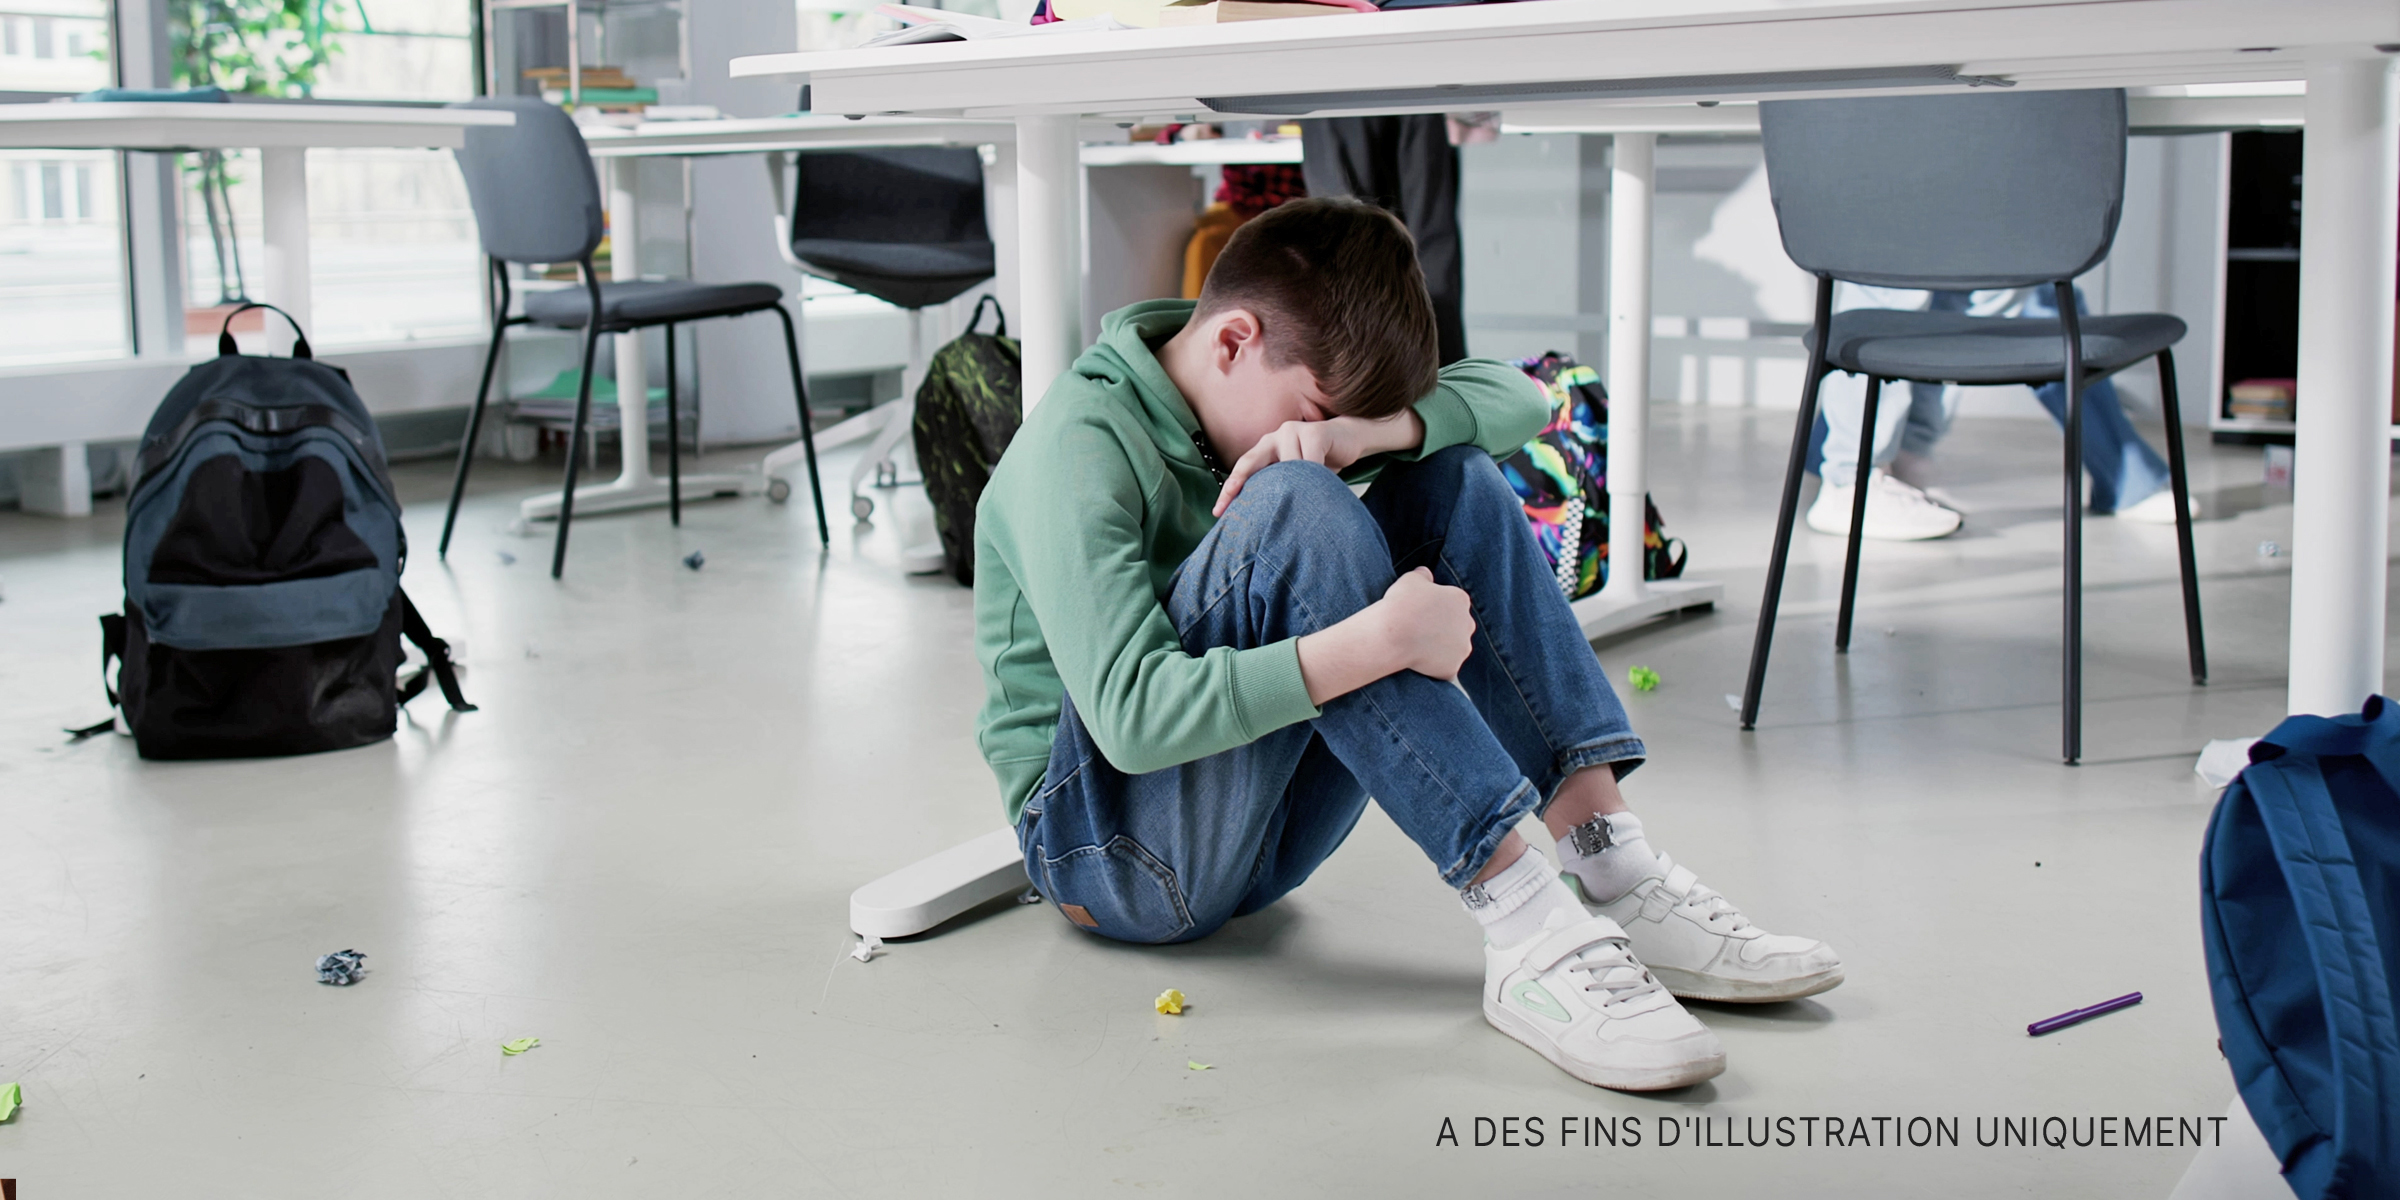 Un garçon se serre les genoux et pleure. | Source : Shutterstock